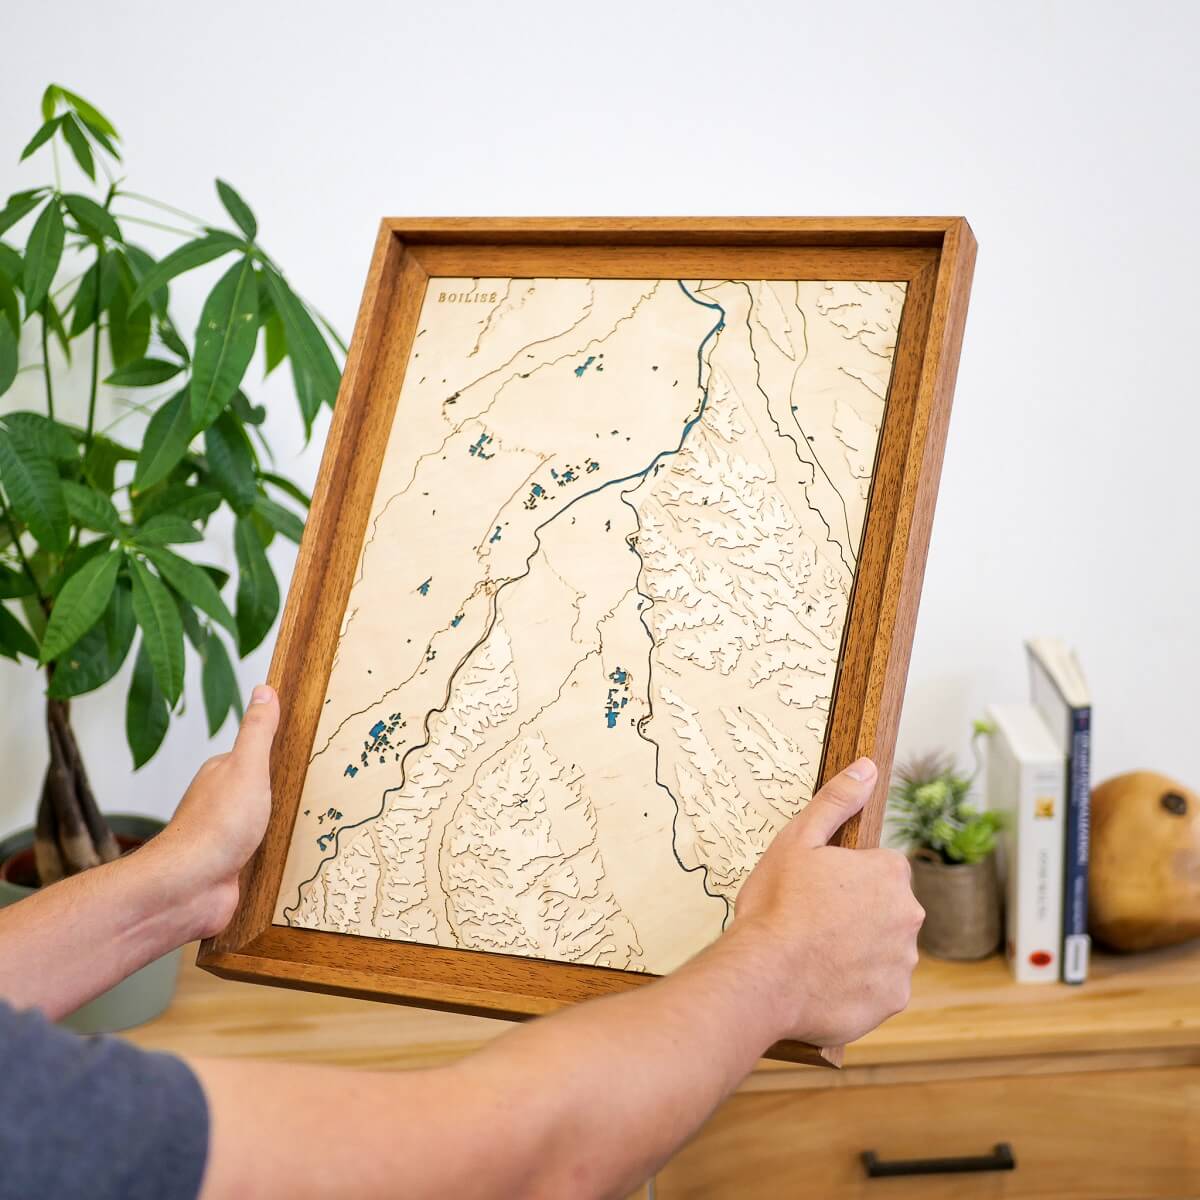 La carte de la confluence Garonne Ariège en bois et en relief